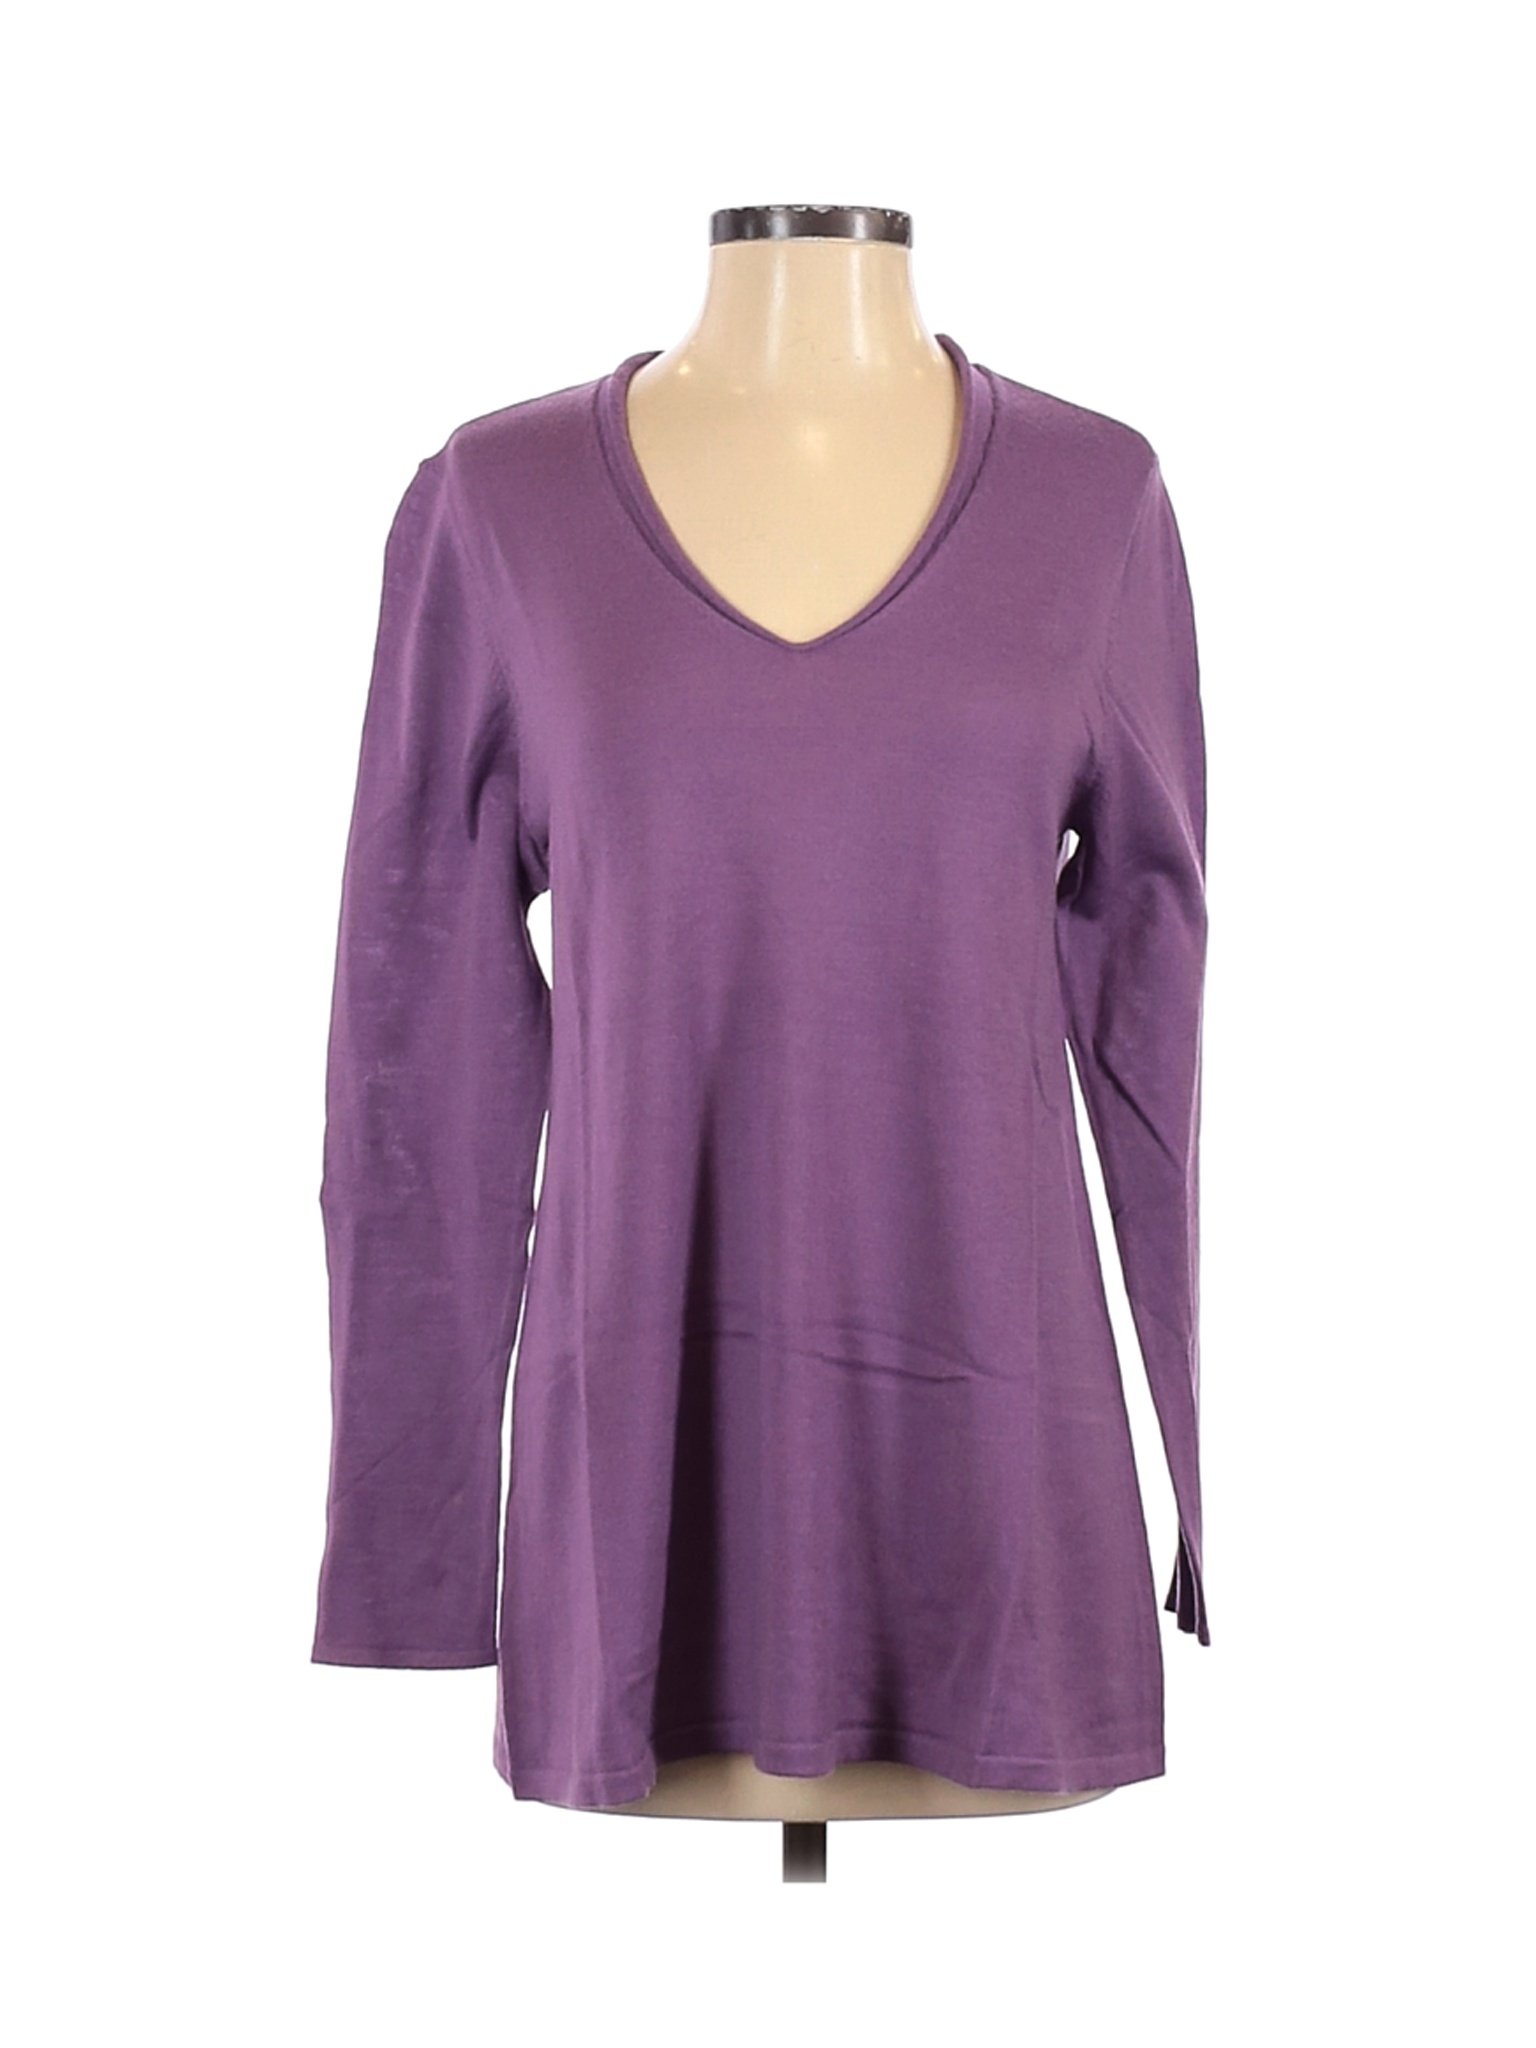 NWT J.Jill Women Purple Wool Pullover Sweater S | eBay